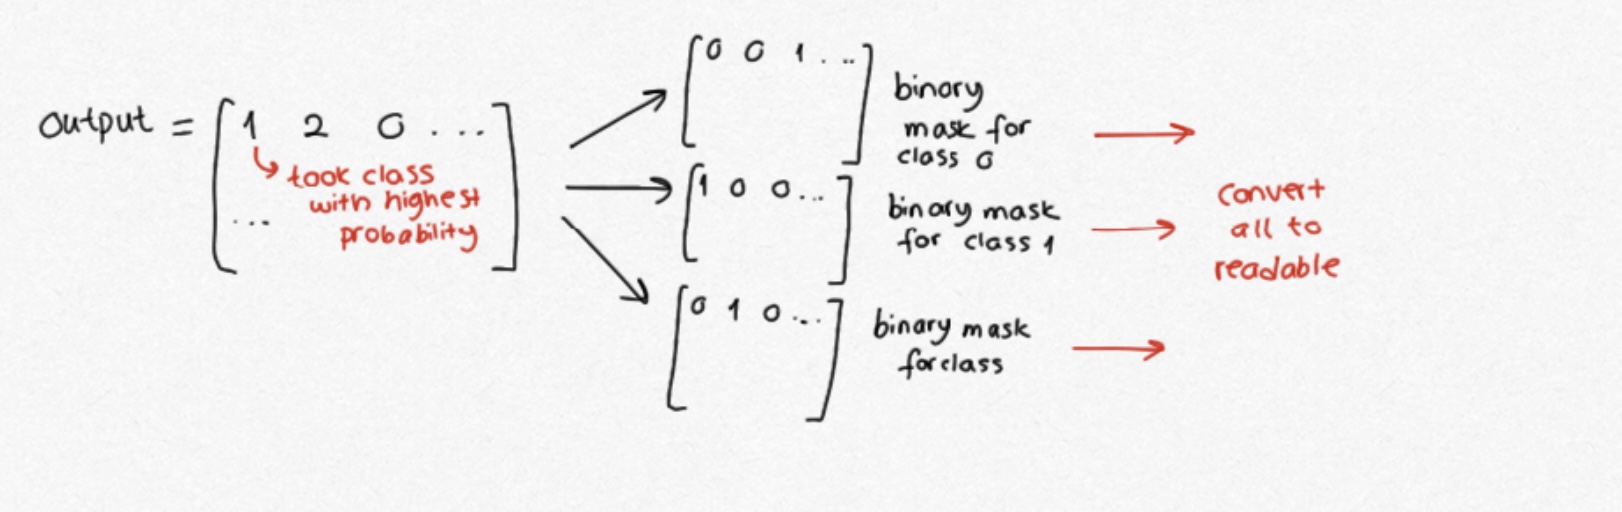 binary_mask.jpg